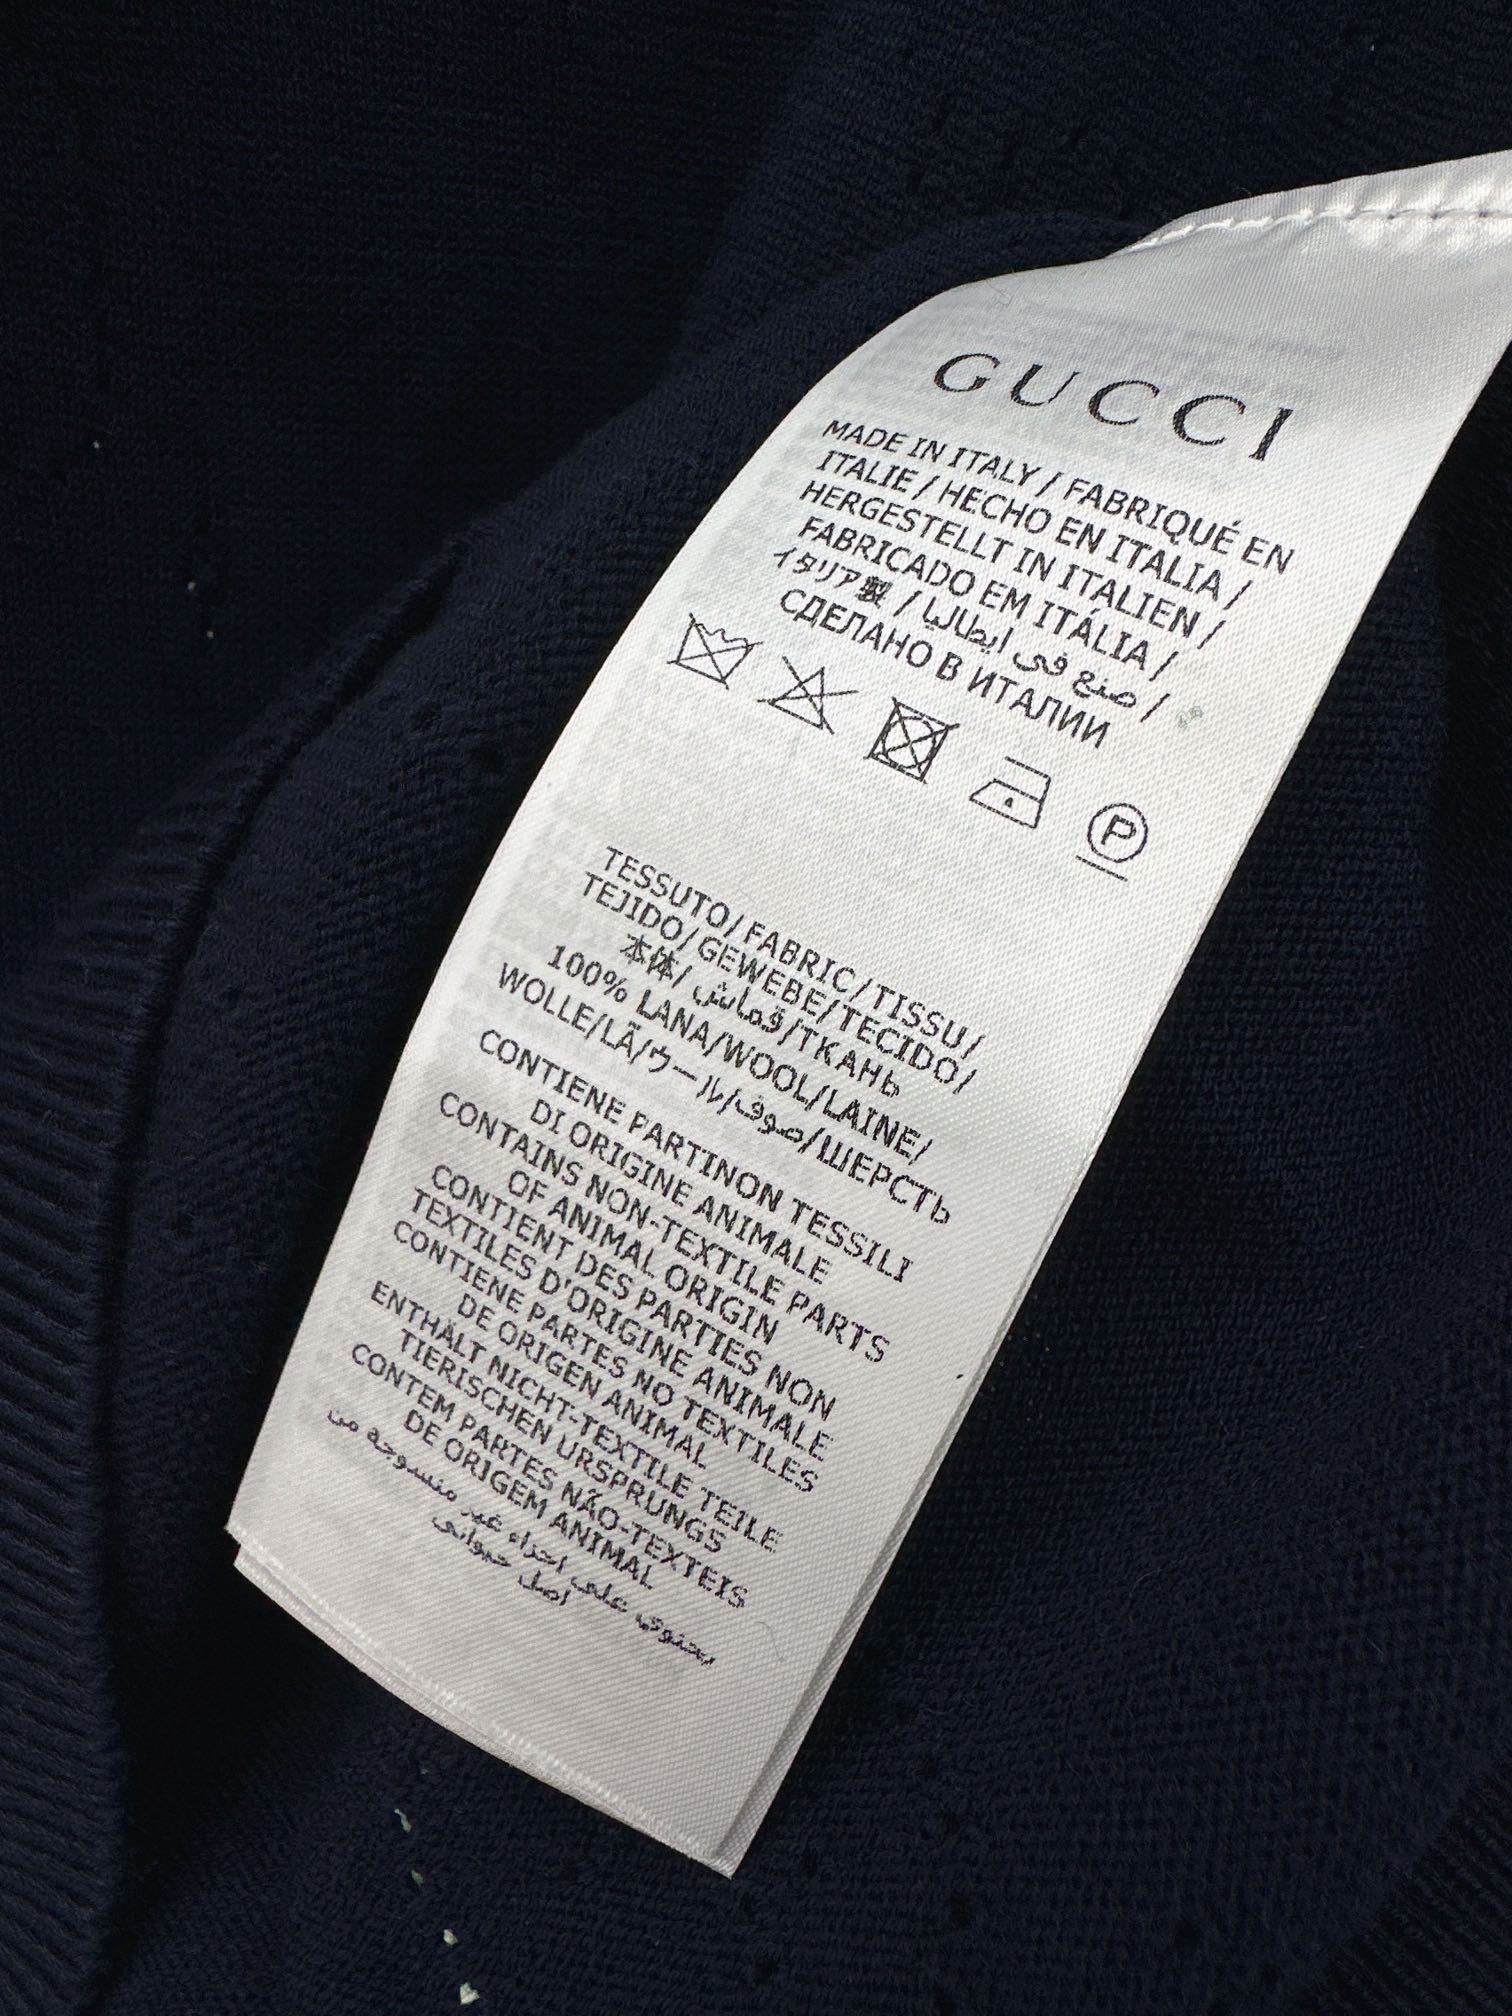 爆单推荐Gu234Ss春夏最新款经典logi提织针织衫满幅GG立体线提工艺配色自带贵气清冷感经典圆领设计